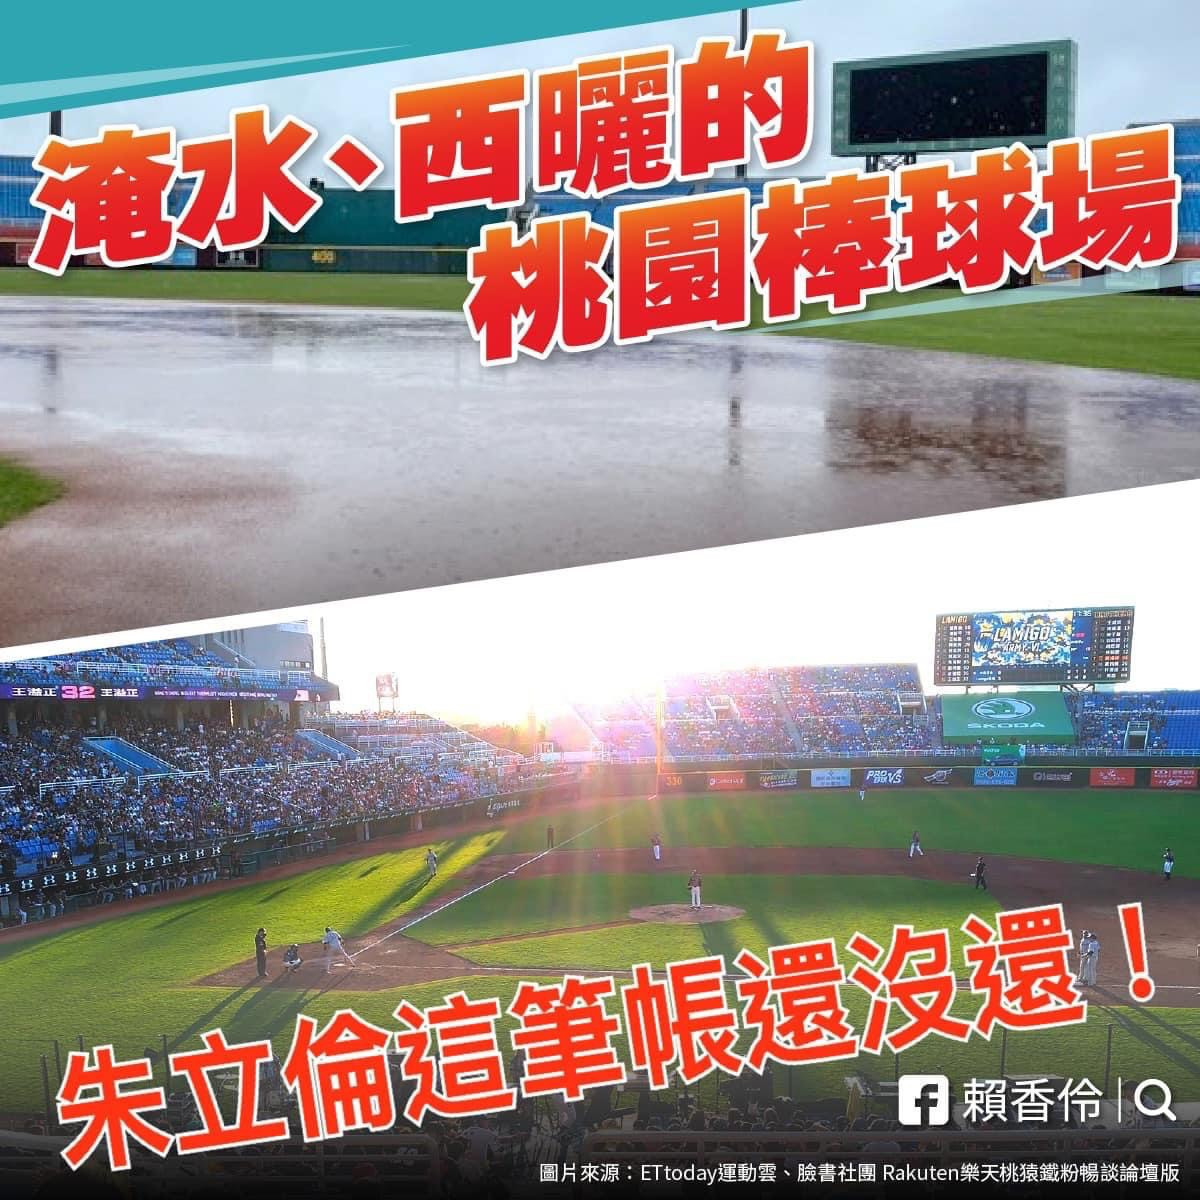 台灣民眾黨桃園市長參選人、立委賴香伶於臉書PO文直指「關於棒球場，國民黨主席朱立倫在桃園還有一筆帳沒算」。<br />
